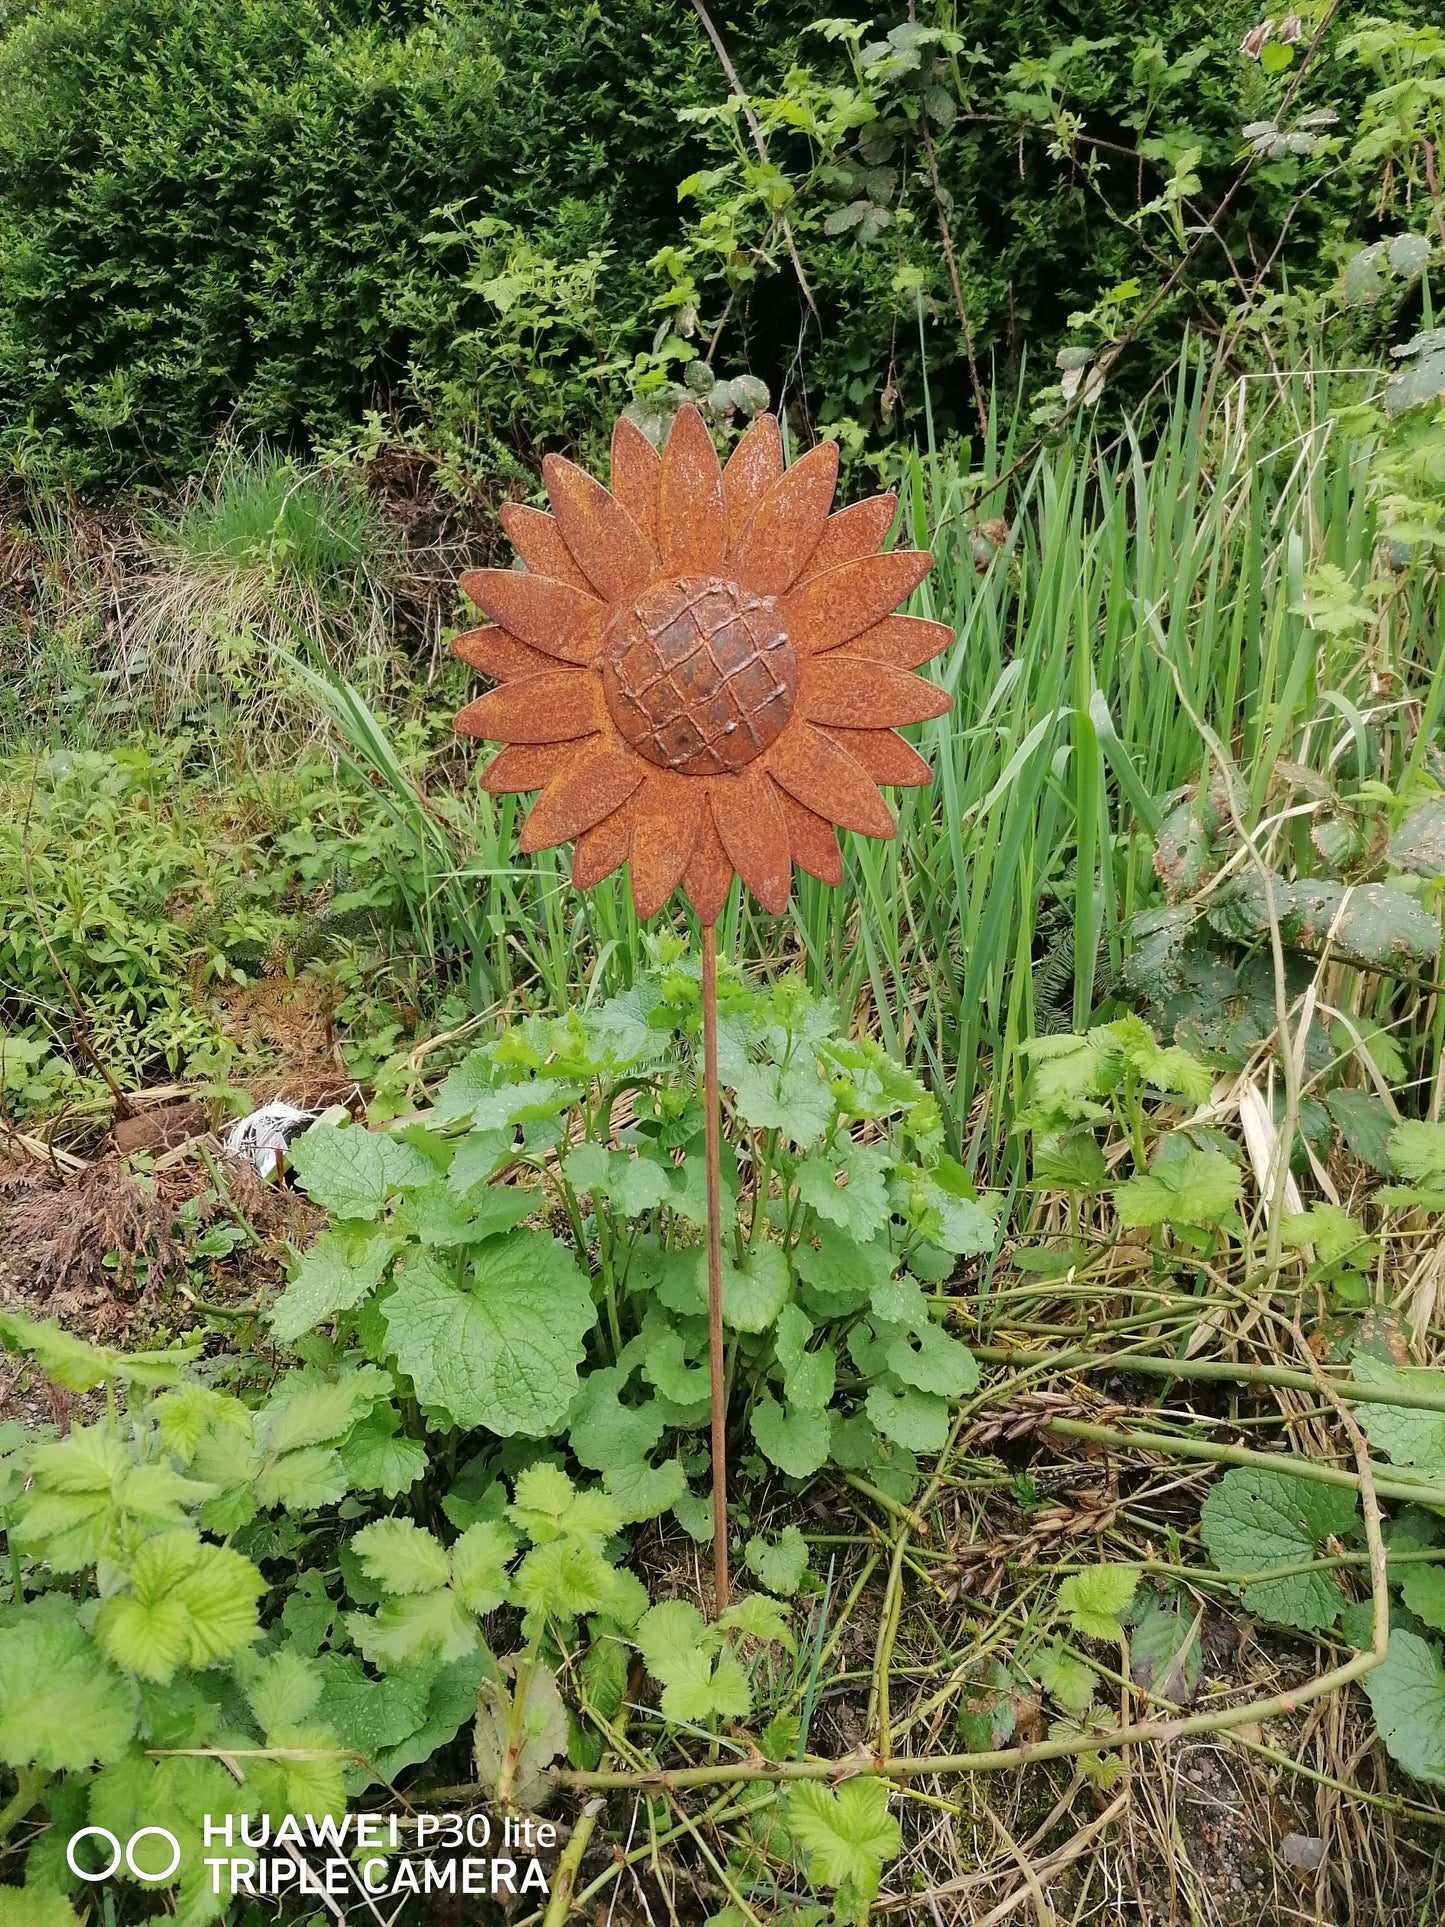 NEU !! Gartenstecker Sonnenblume 80 cm lang aus Metall in Edelrost Deko Rankhilfe